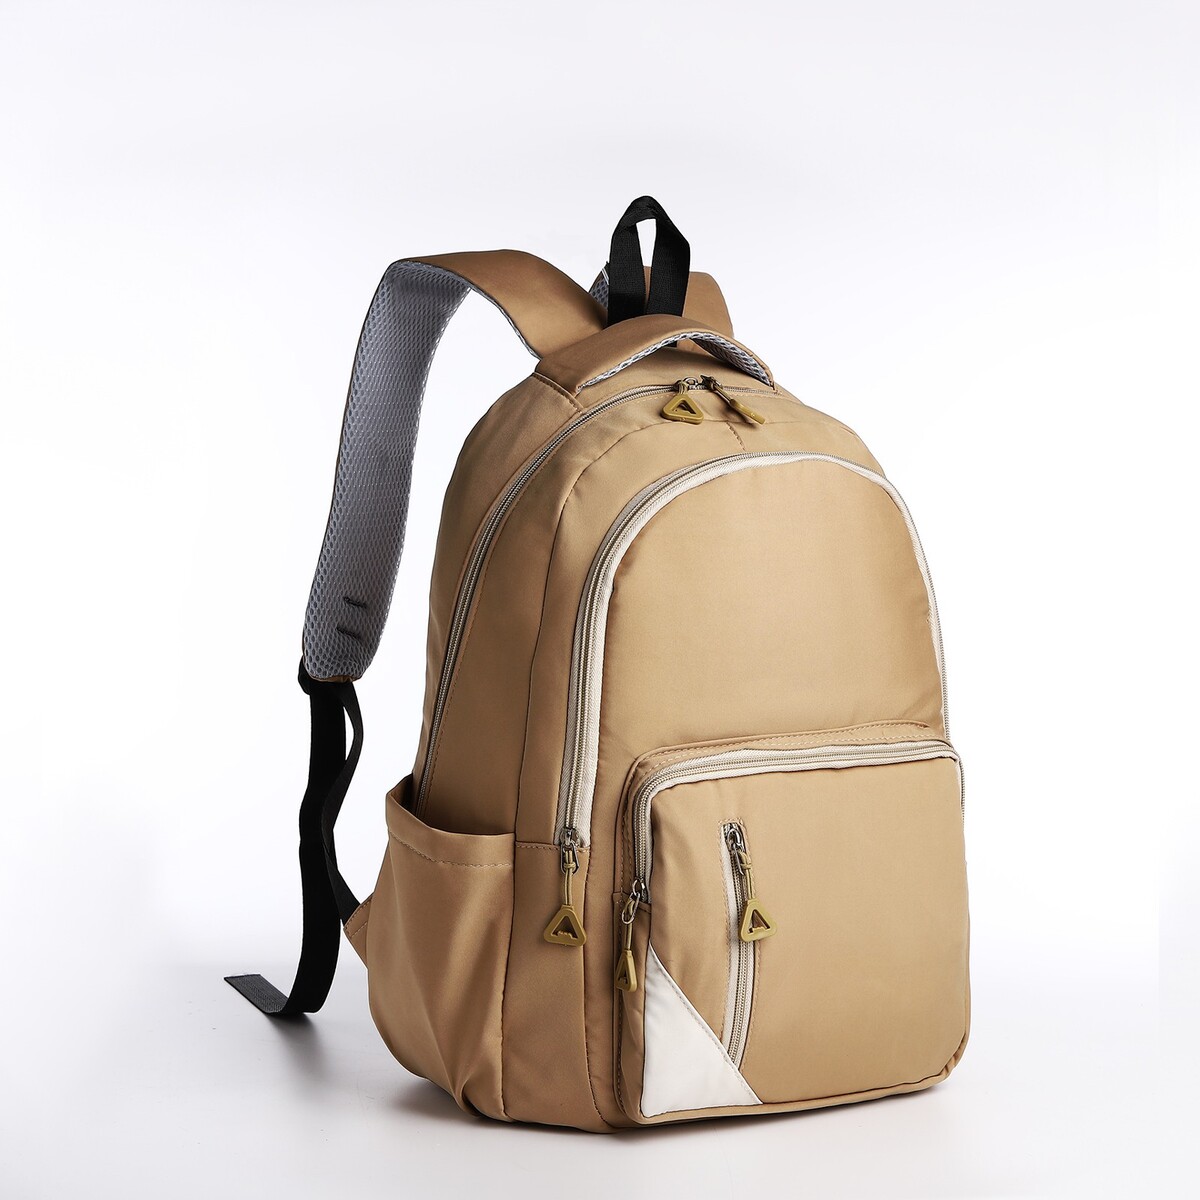 Рюкзак молодежный из текстиля, 2 отдела, 3 кармана, цвет бежевый рюкзак школьный из текстиля на молнии 4 кармана кошелек бежевый